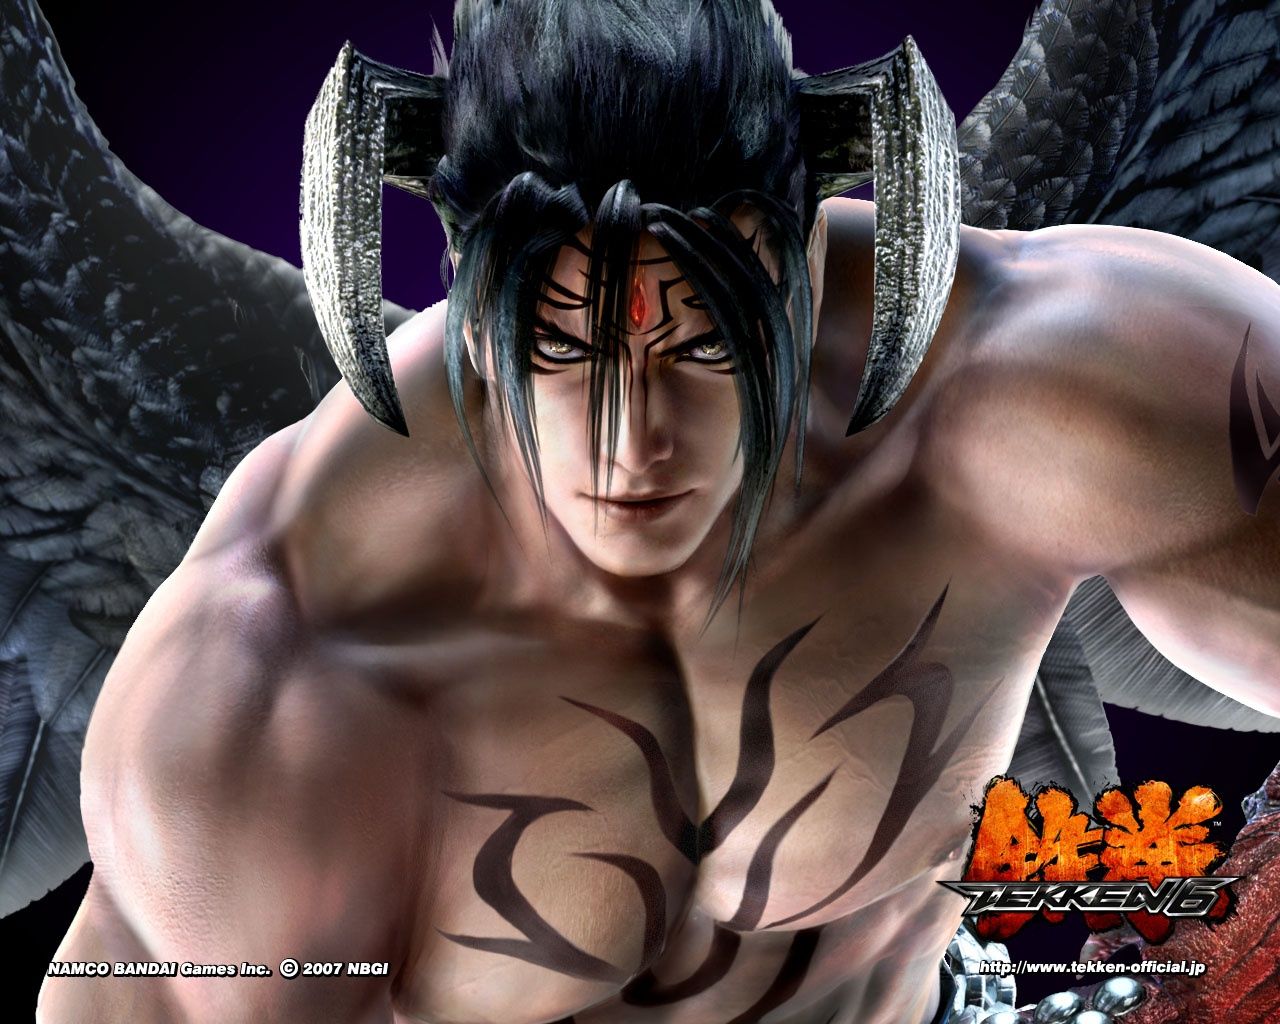 Devil Jin Tekken 6 Wallpapers | HD Wallpapers